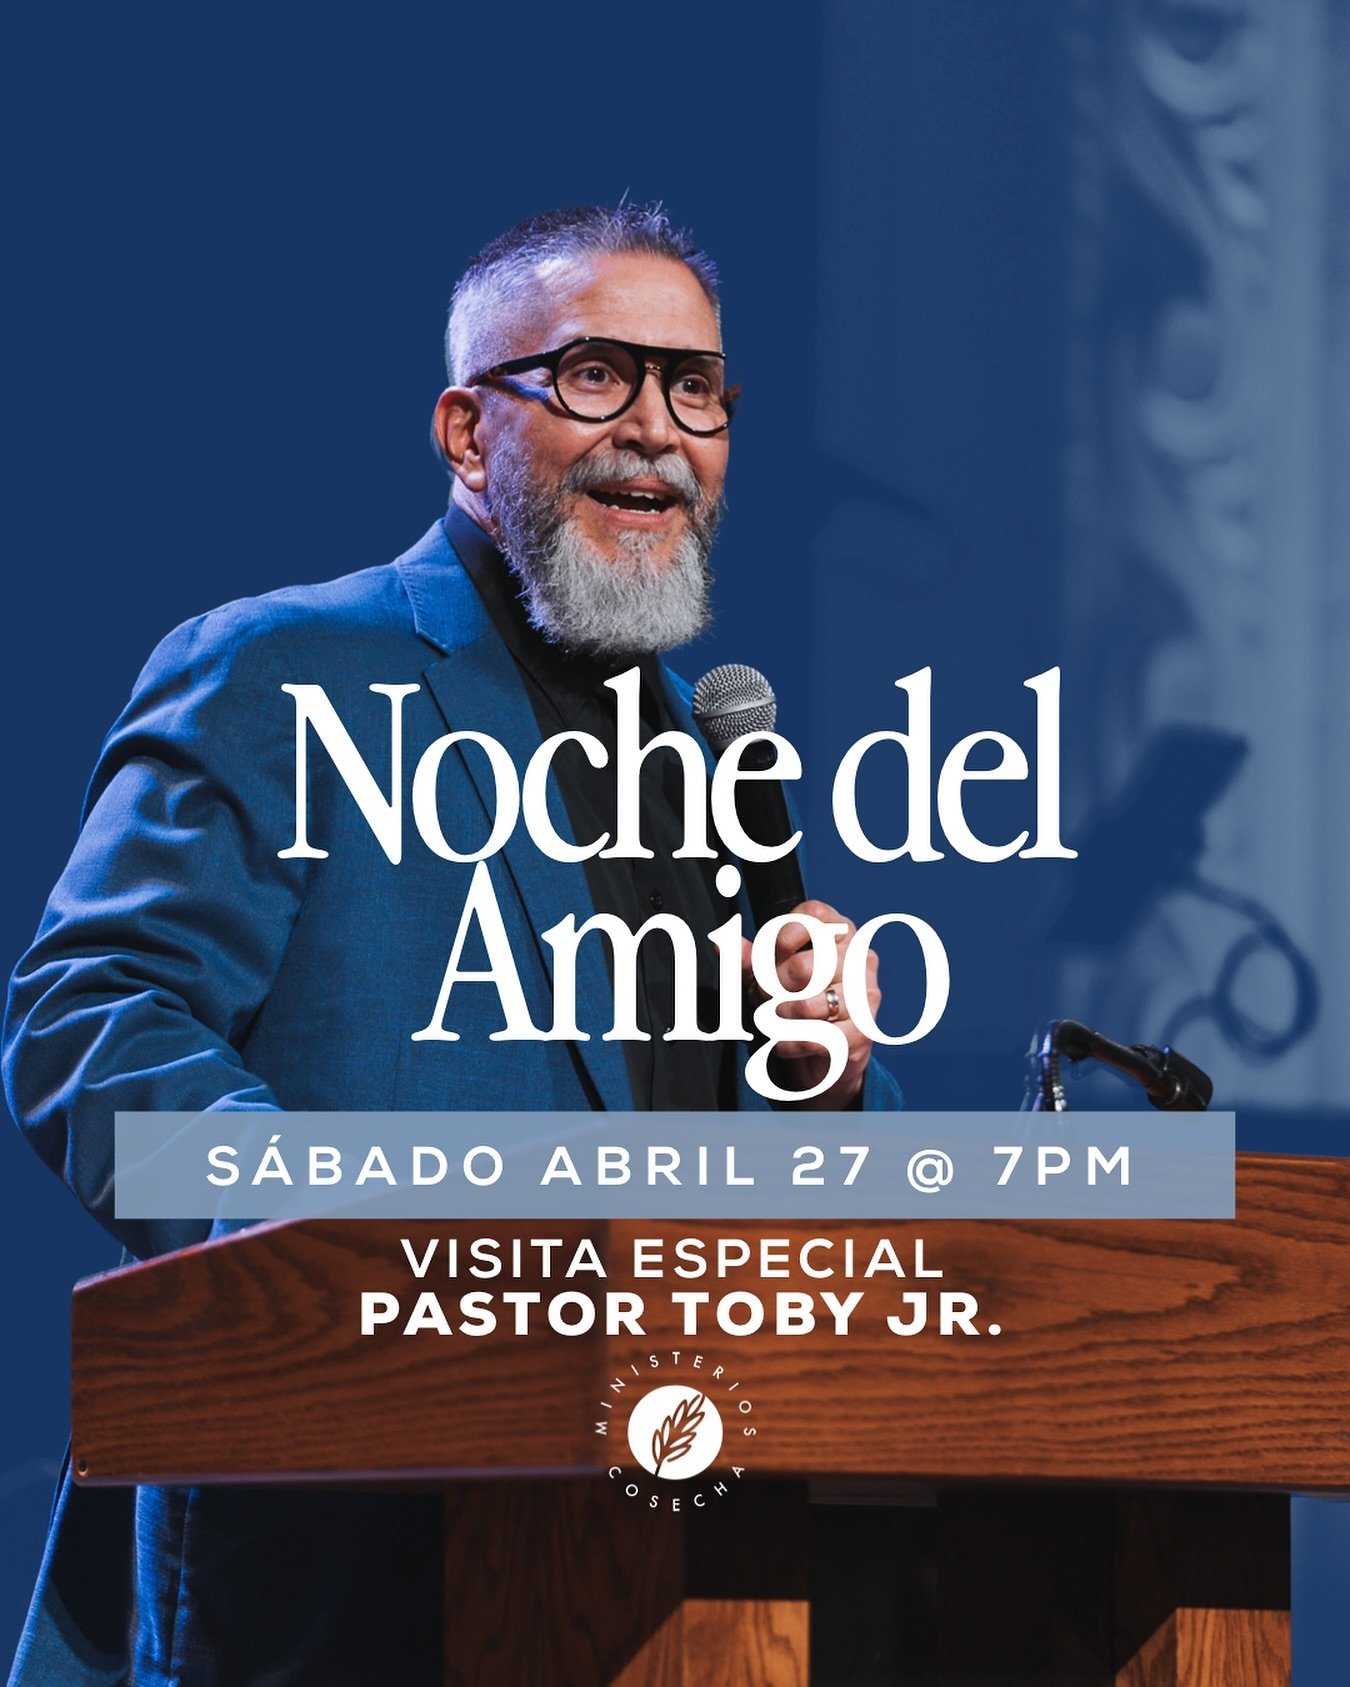 Noche del Amigo S&aacute;bado 27 de Abril a las 7pm. Invitado especial: Pastor Toby Jr. del El Salvador. Hagamos la invitaci&oacute;n a nuestros amigos y familiares!